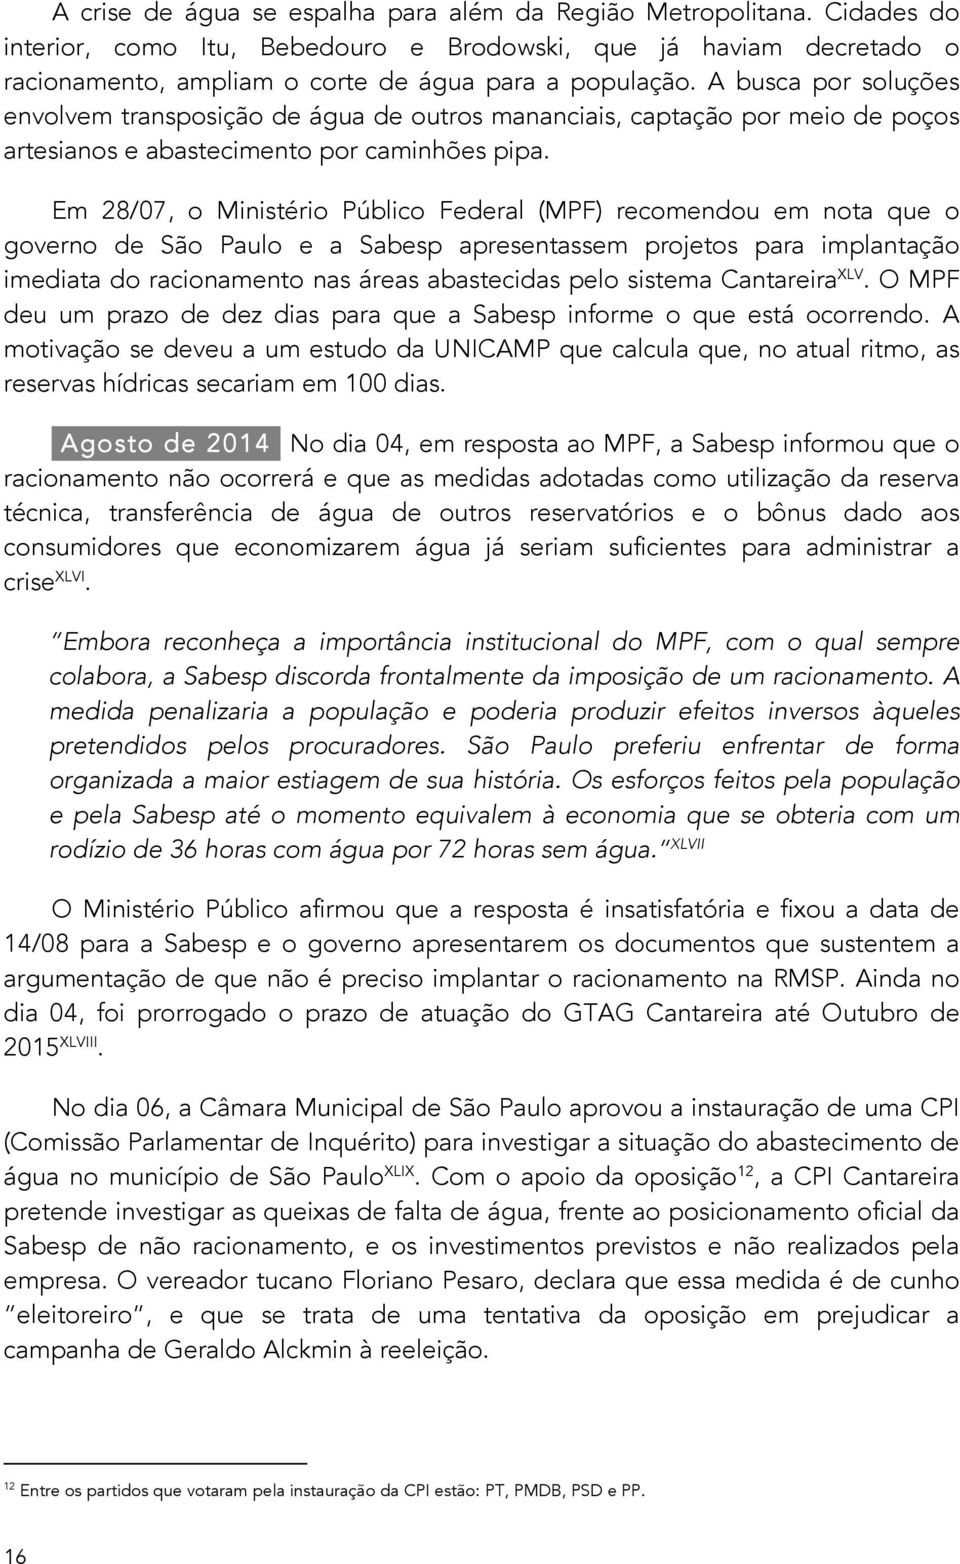 Em 28/07, o Ministério Público Federal (MPF) recomendou em nota que o governo de São Paulo e a Sabesp apresentassem projetos para implantação imediata do racionamento nas áreas abastecidas pelo